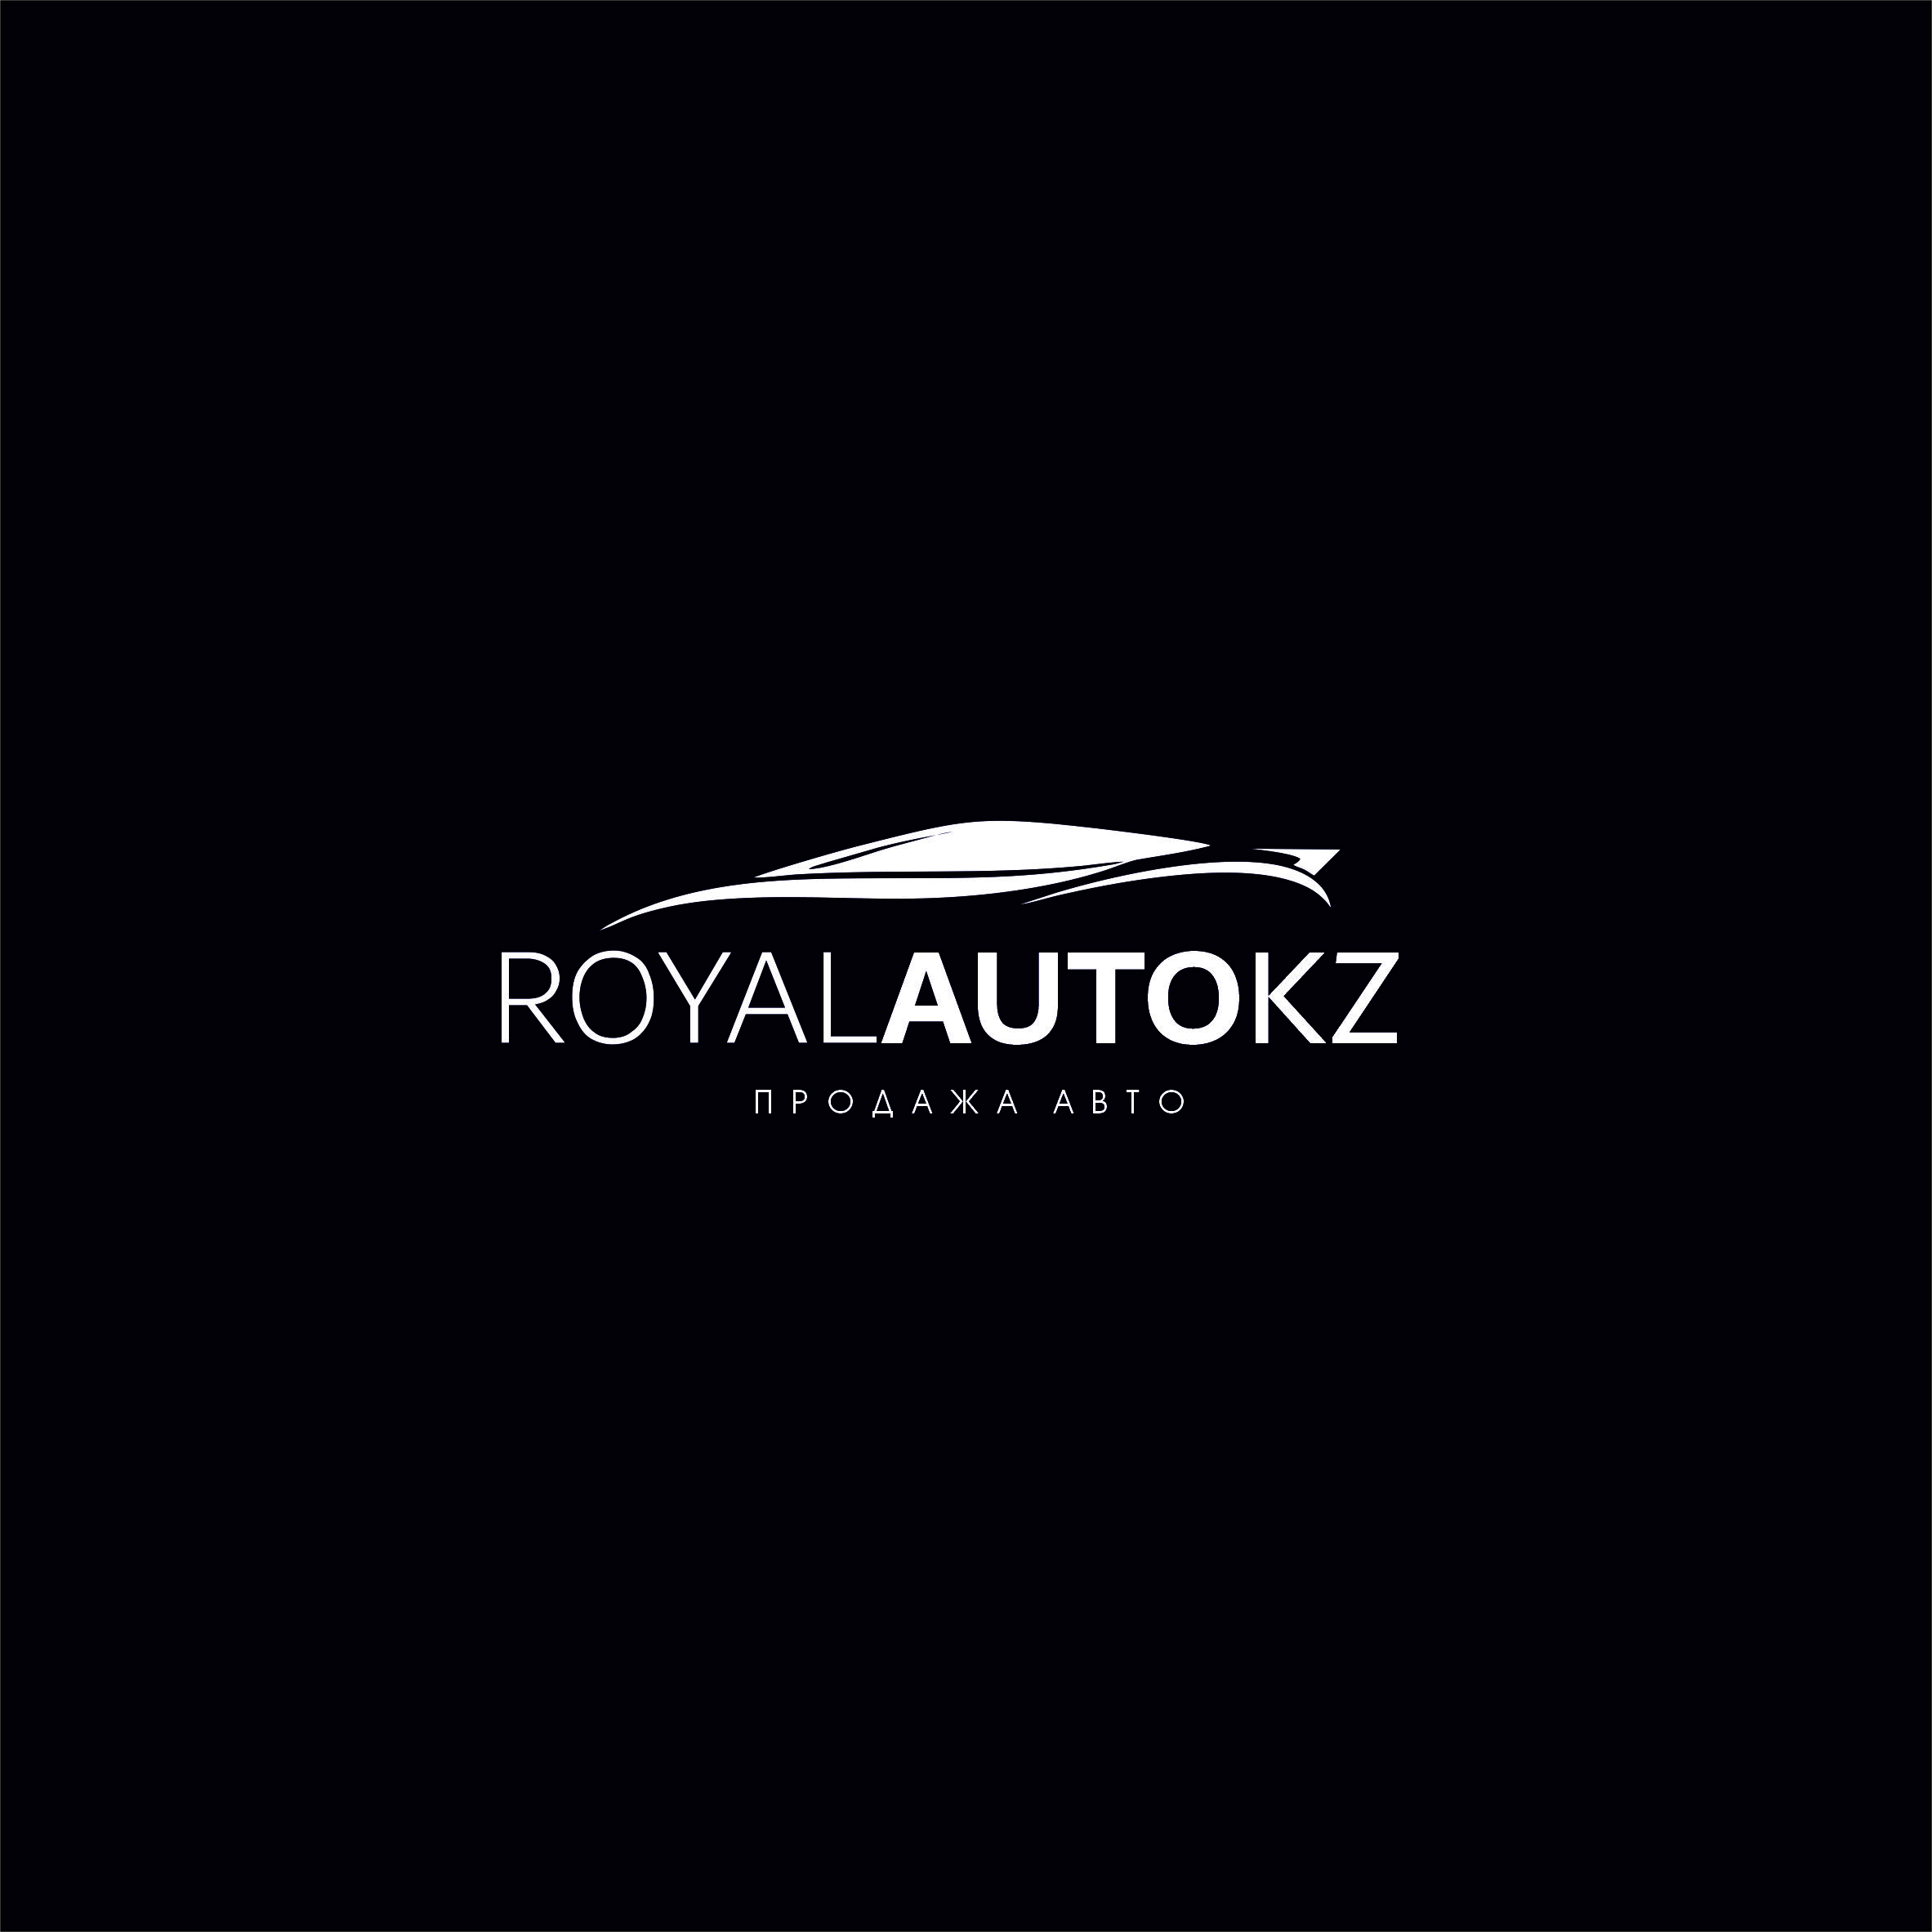 Royal auto Kz